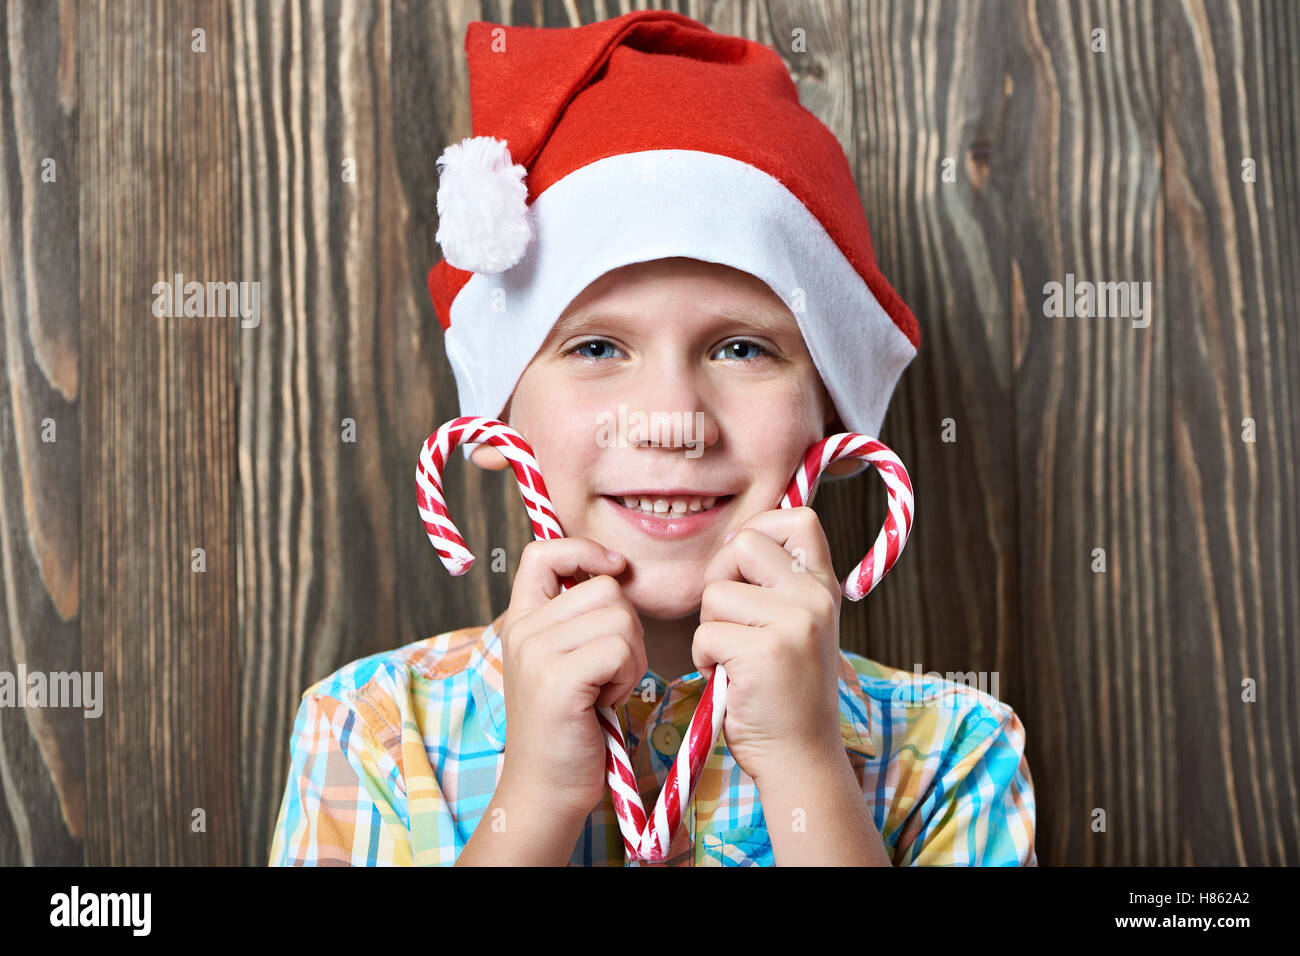 Petit garçon dans une nouvelle année, le bonnet rouge avec deux cannes de bonbons de Noël Banque D'Images